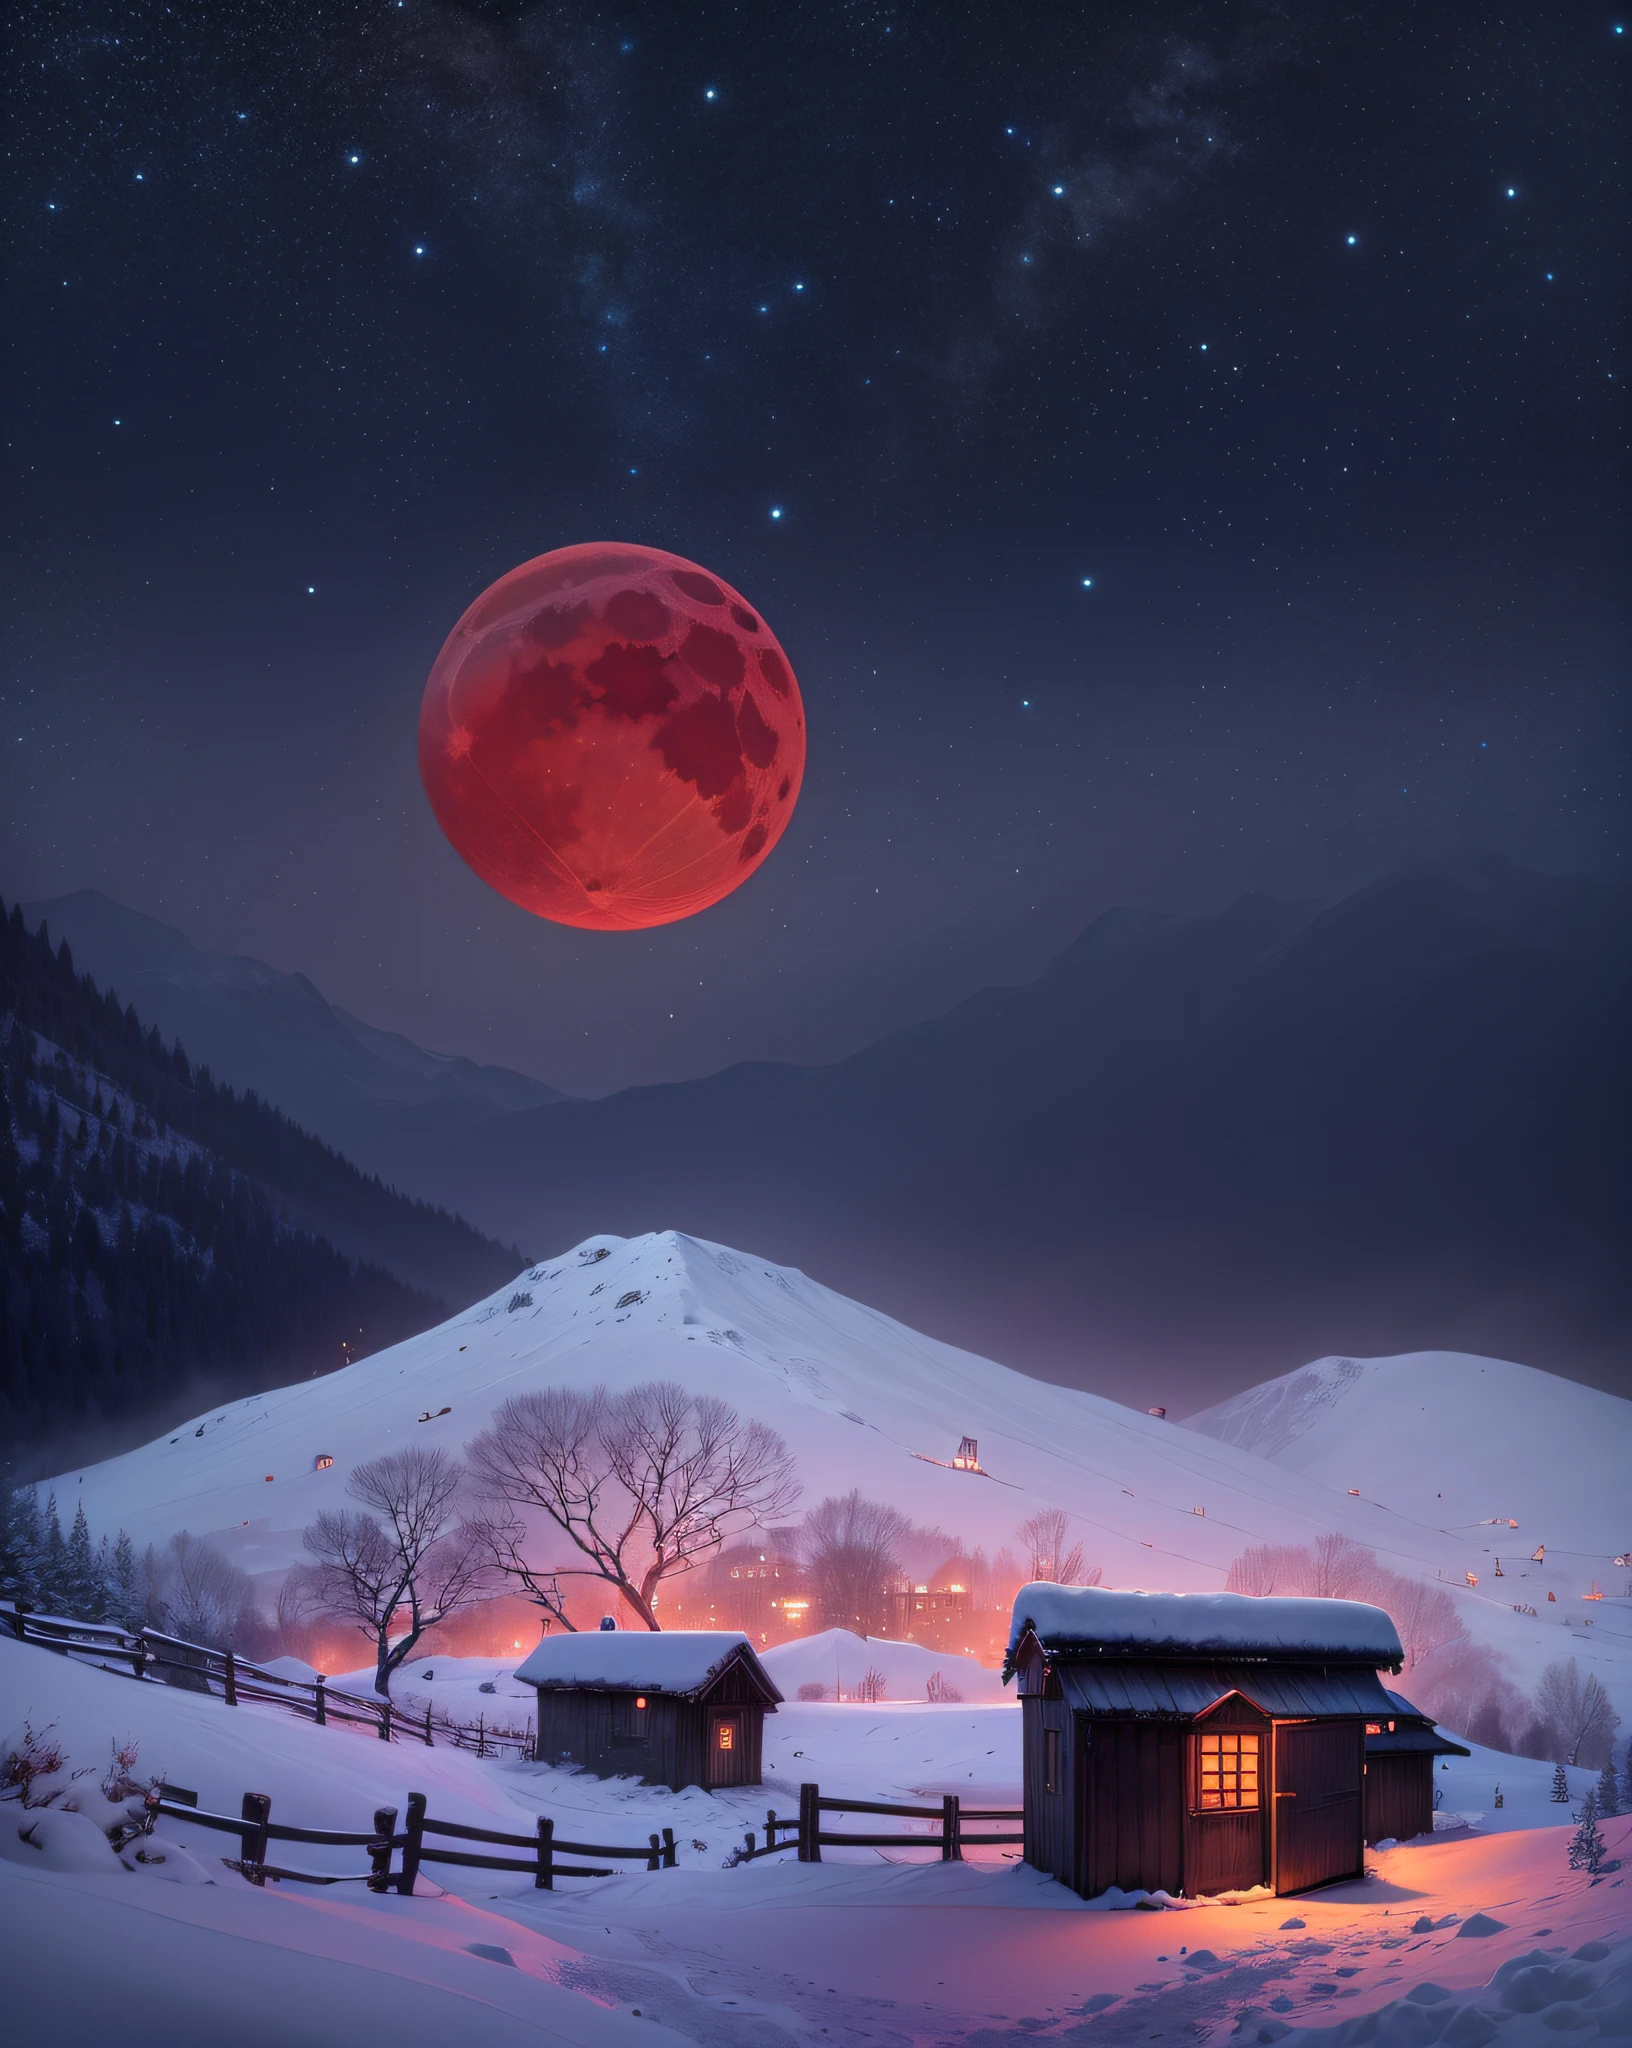 黑夜、红月亮、雪景、雪山、小棚、透过棚屋窗户漏出的光线